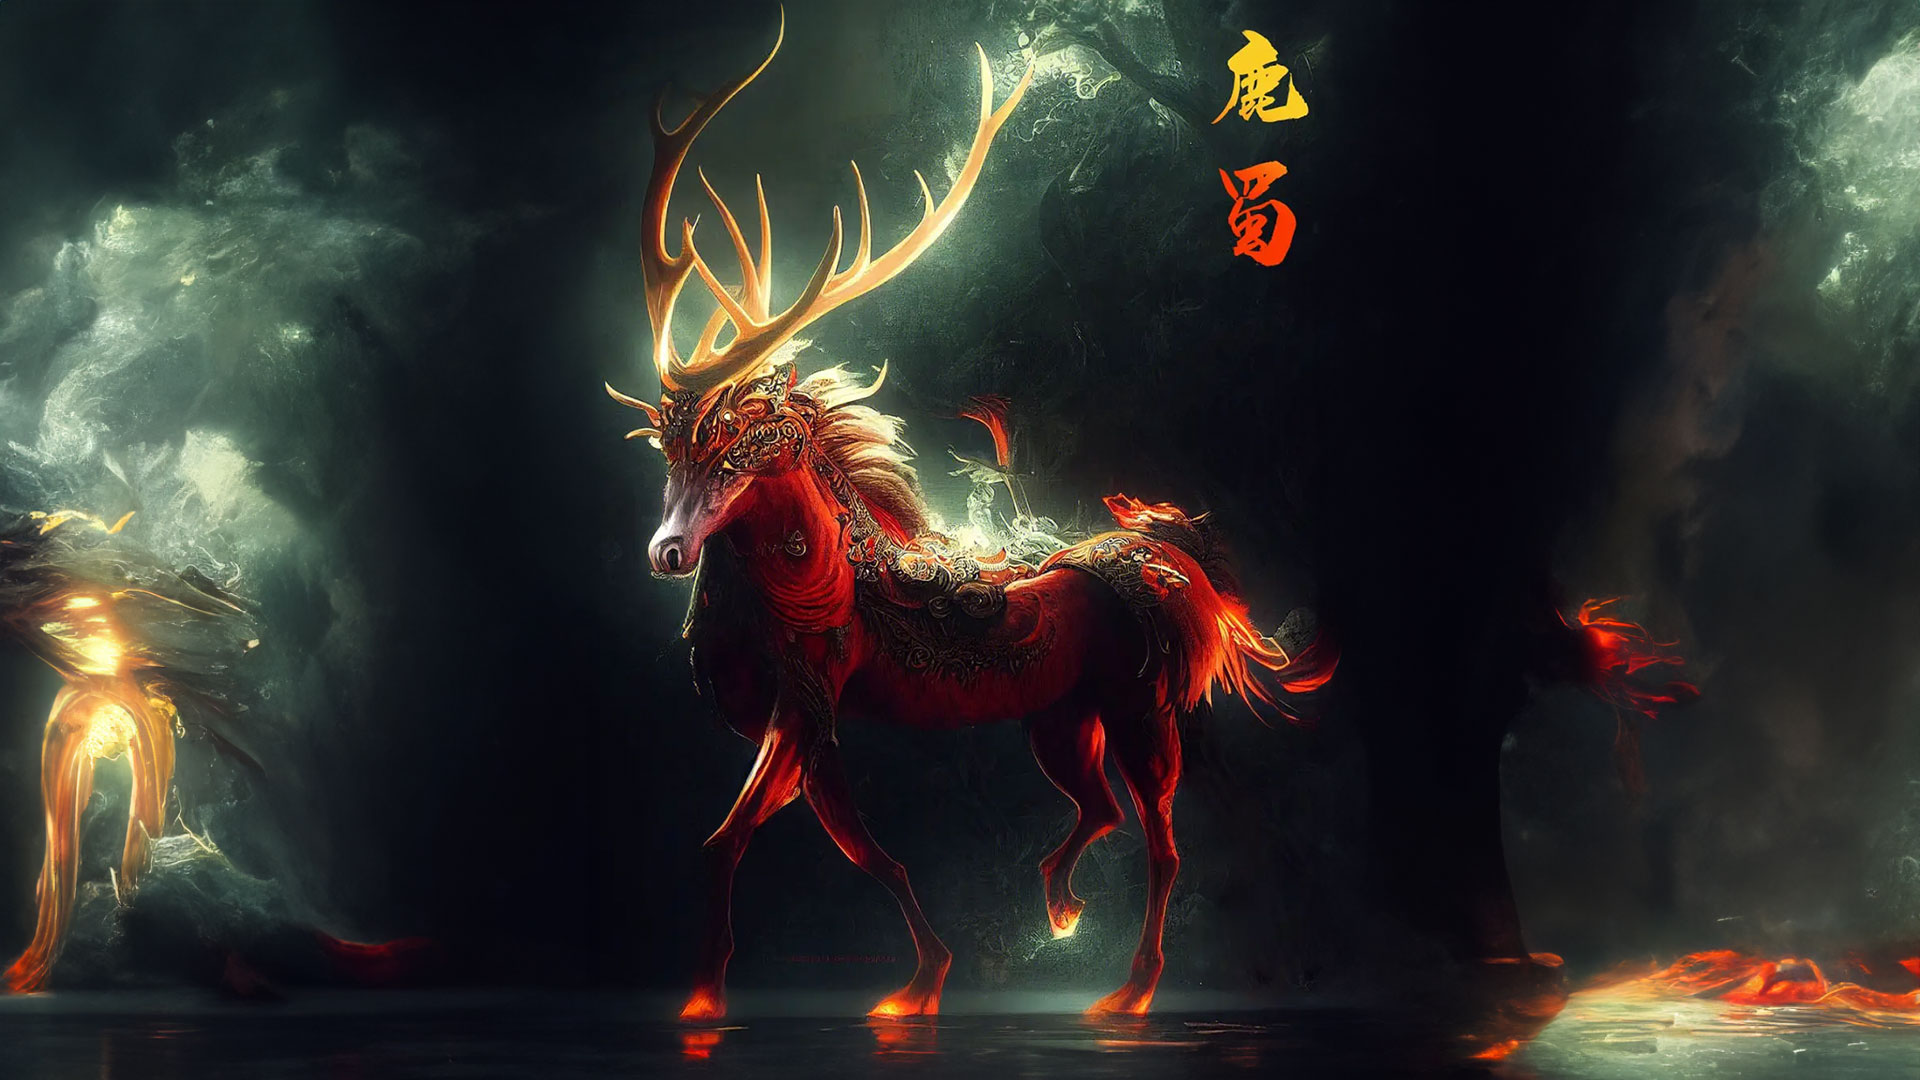 山海经异兽:鹿蜀,状马白首赤尾,象征繁荣和长寿